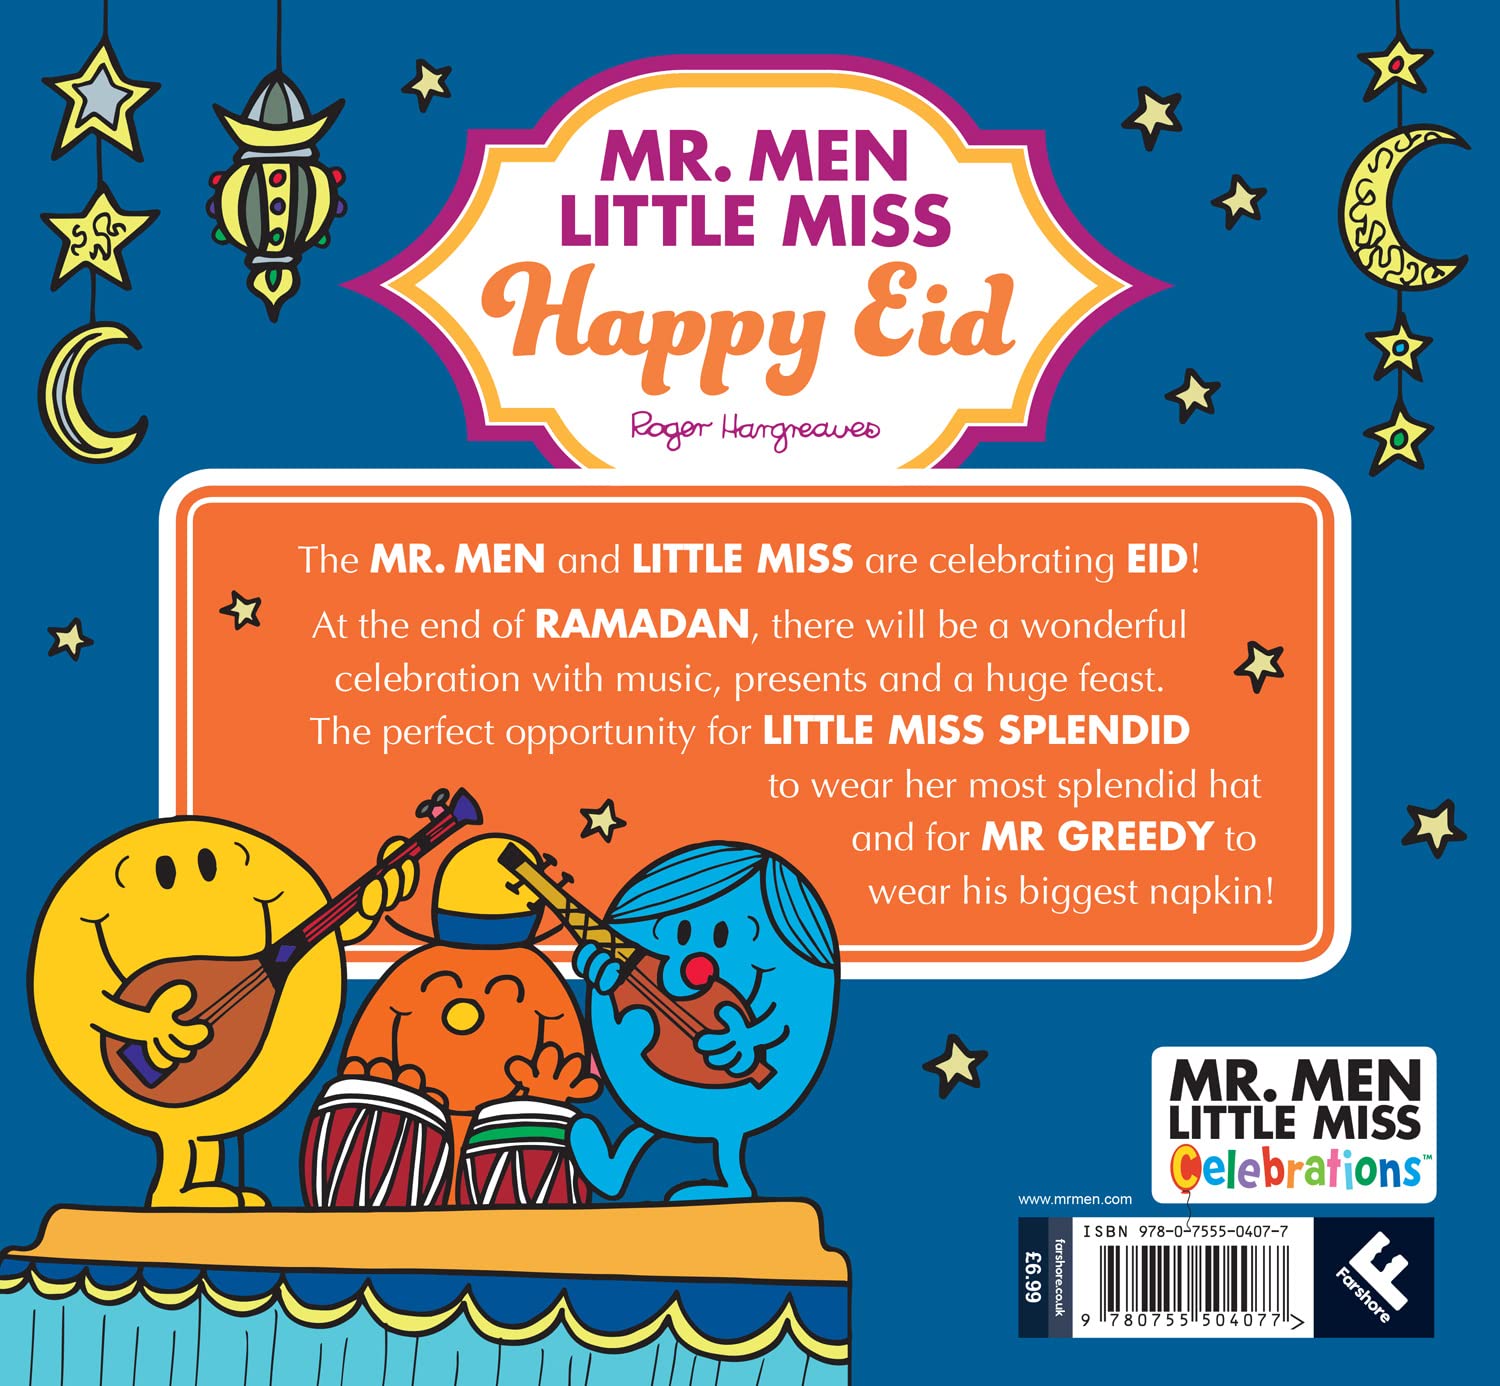 Mr. Men Little Miss Happy Eid - Adam Hargreaves